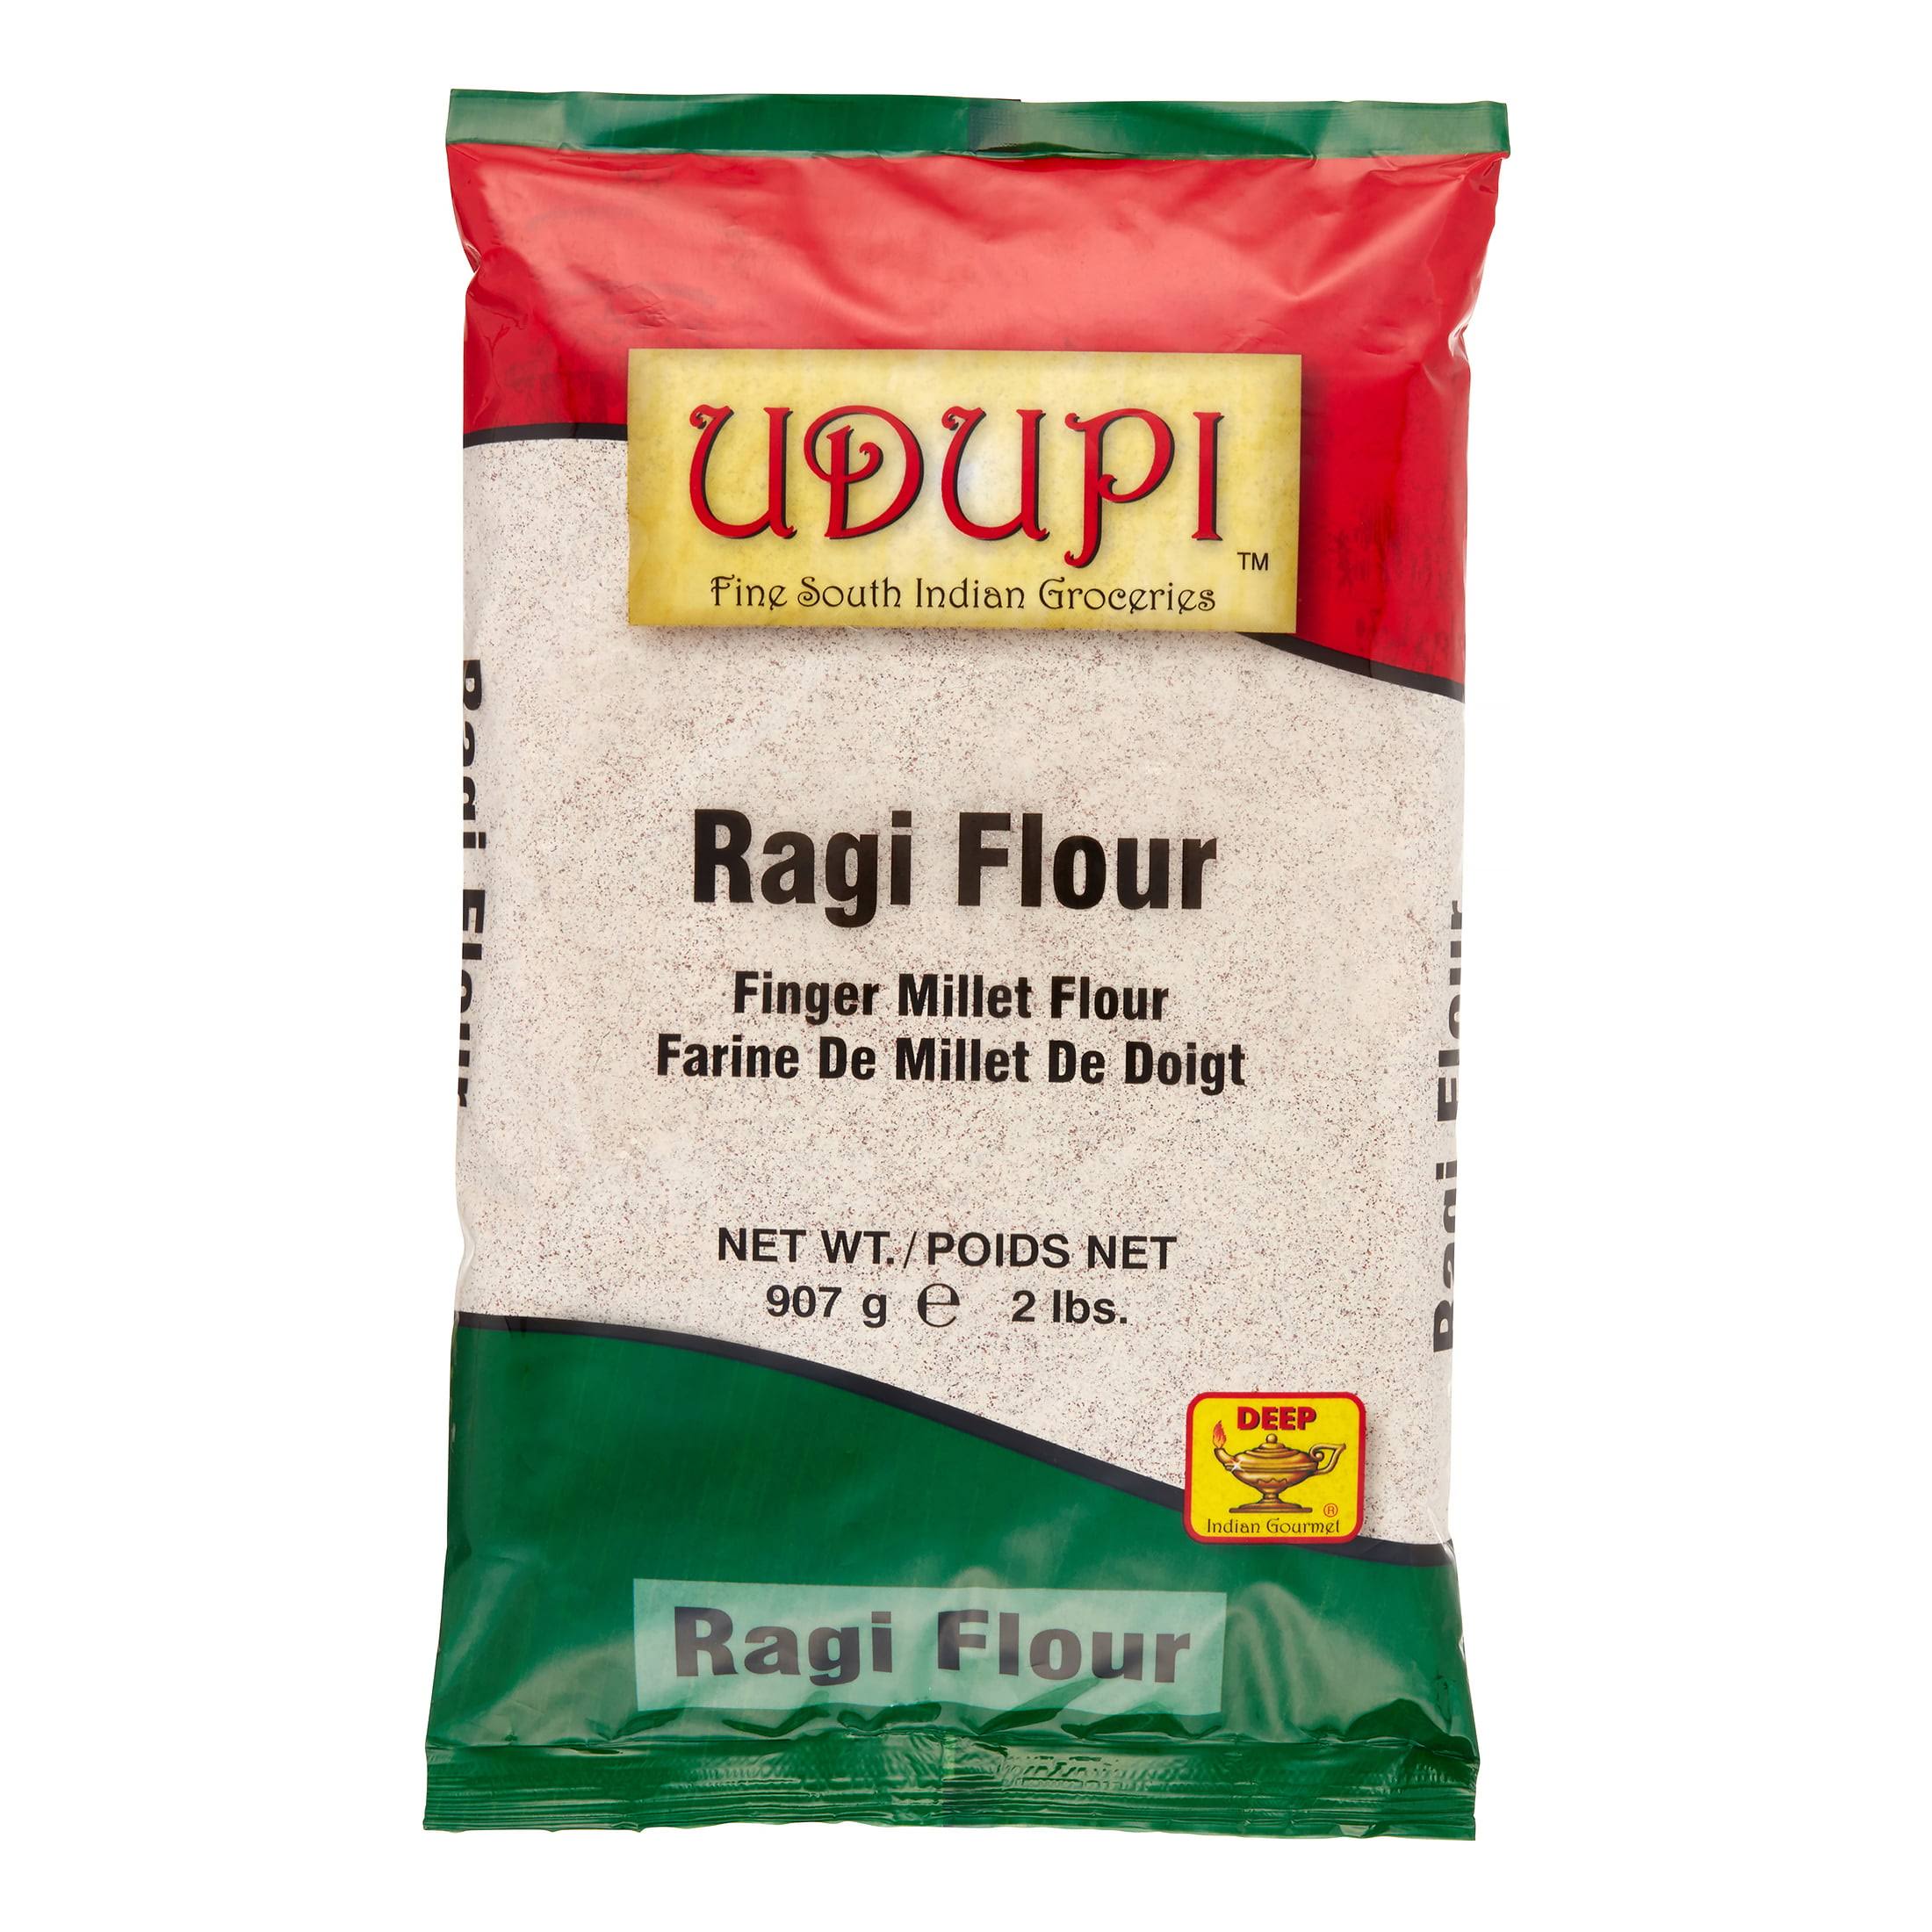 Udupi Ragi Flour - 2 lb